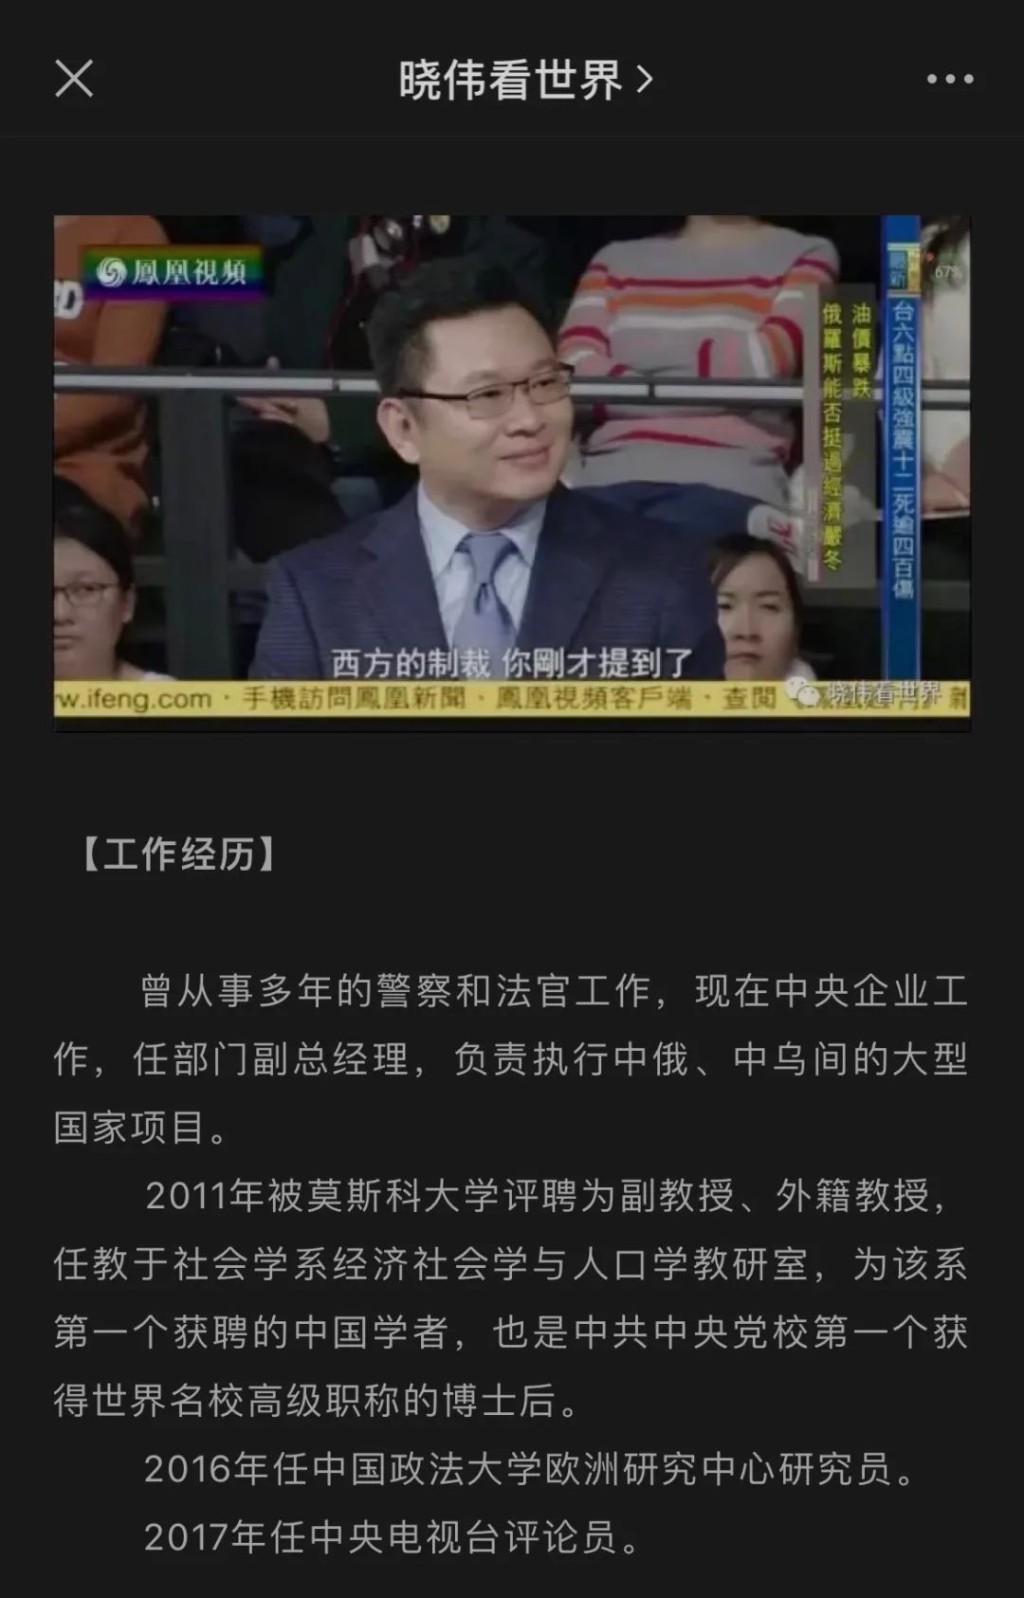 王晓伟成为凤凰卫视、东方卫视等上百家中外媒体的常客。互联网